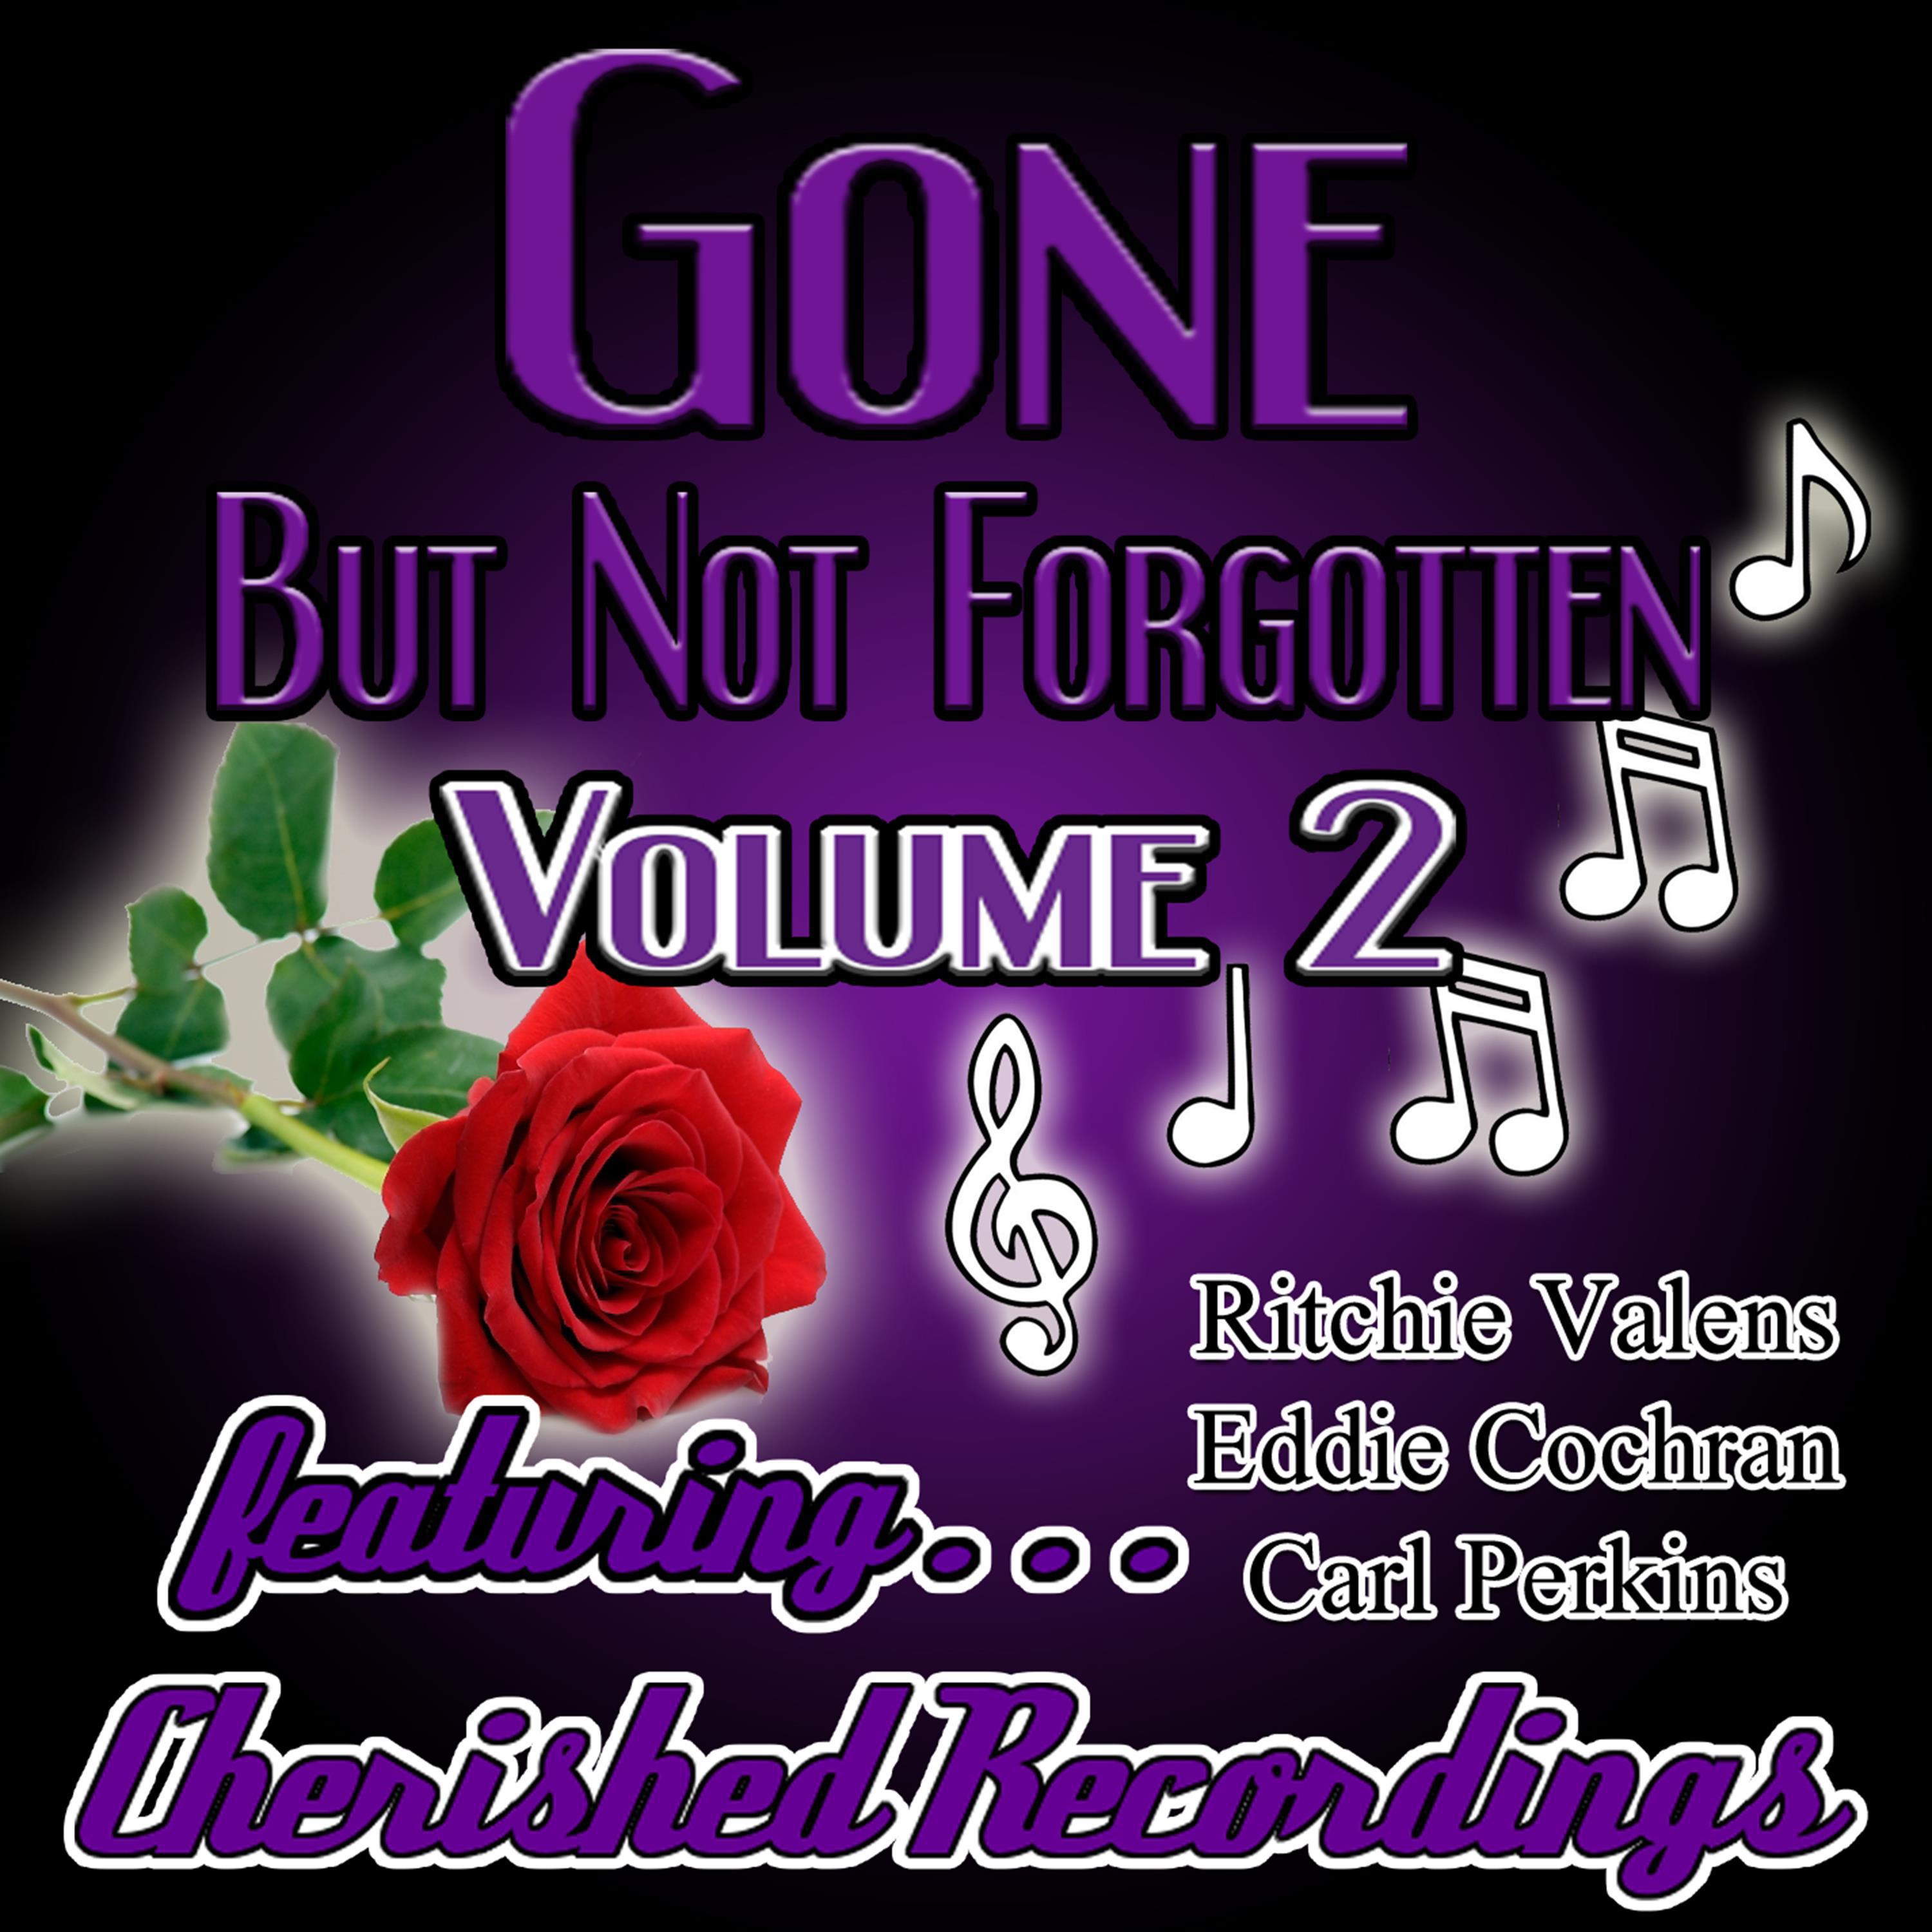 Gone but Not Forgotten, Vol. 2